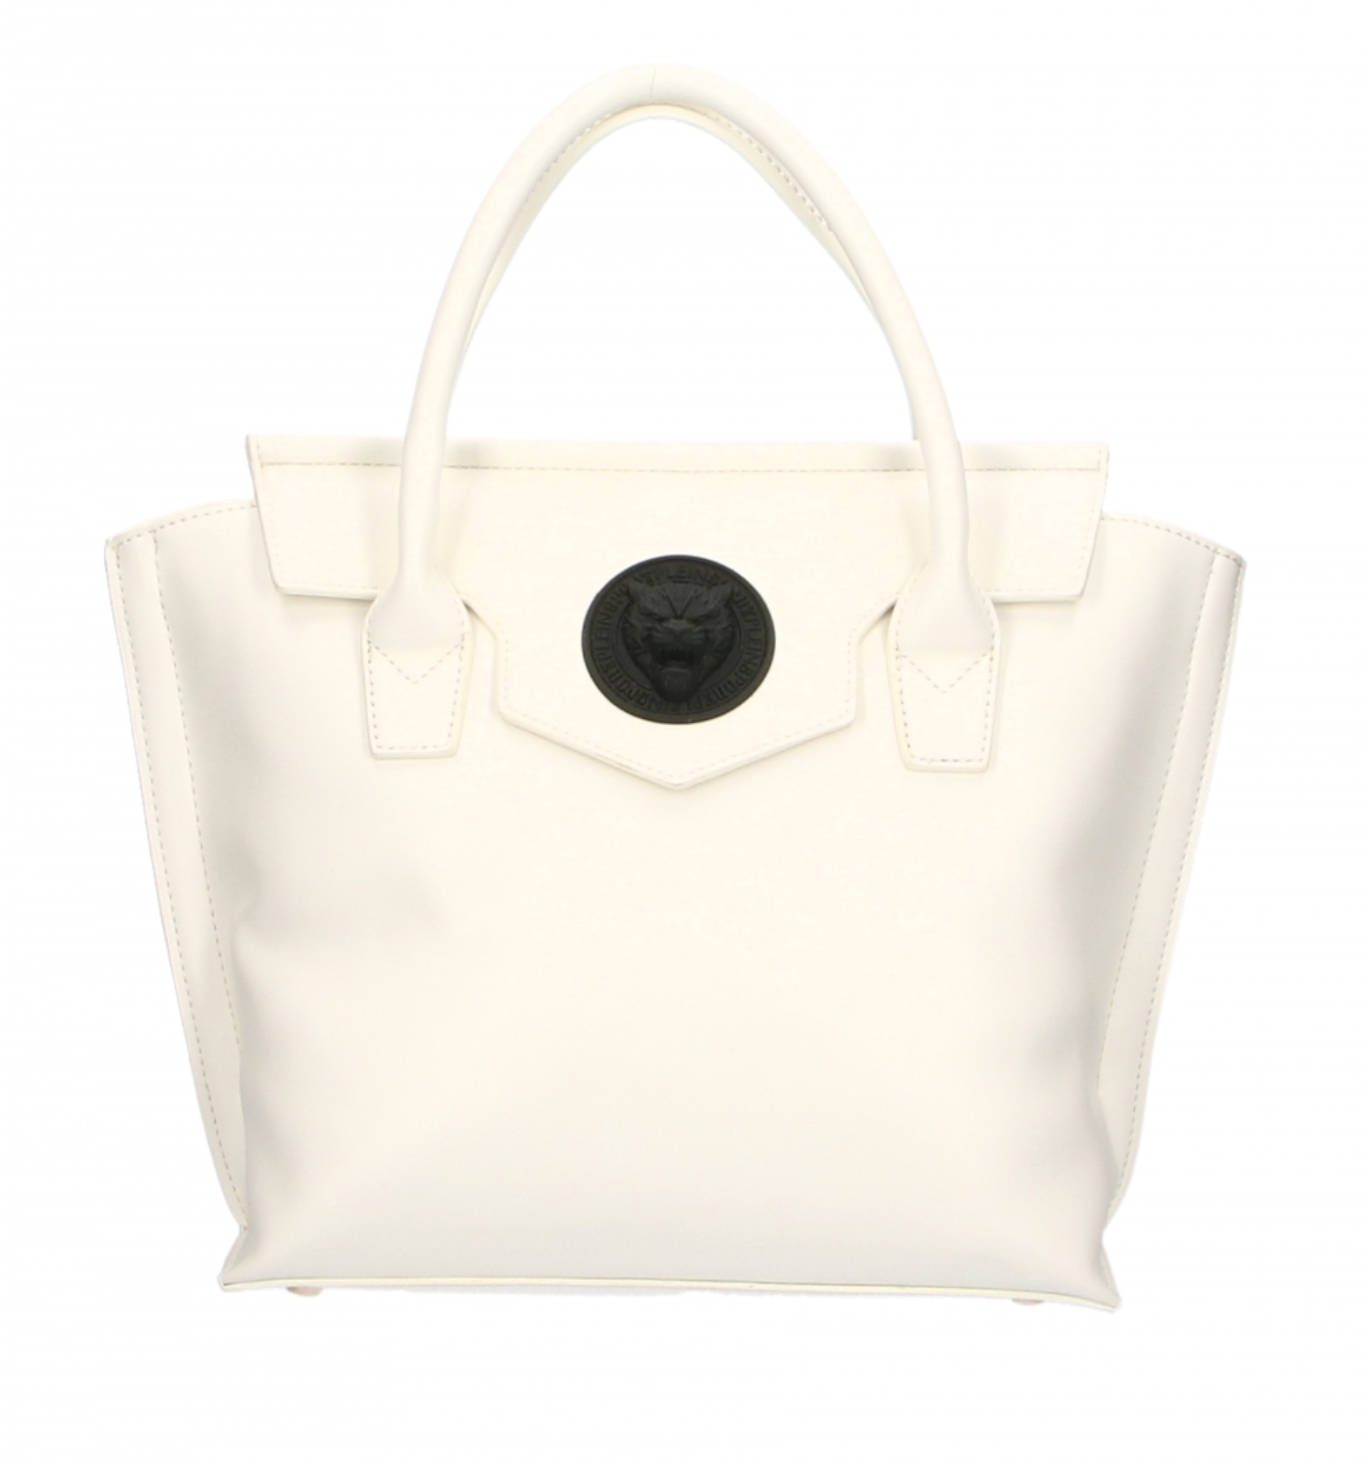 Chic White Polyethylene Handbag